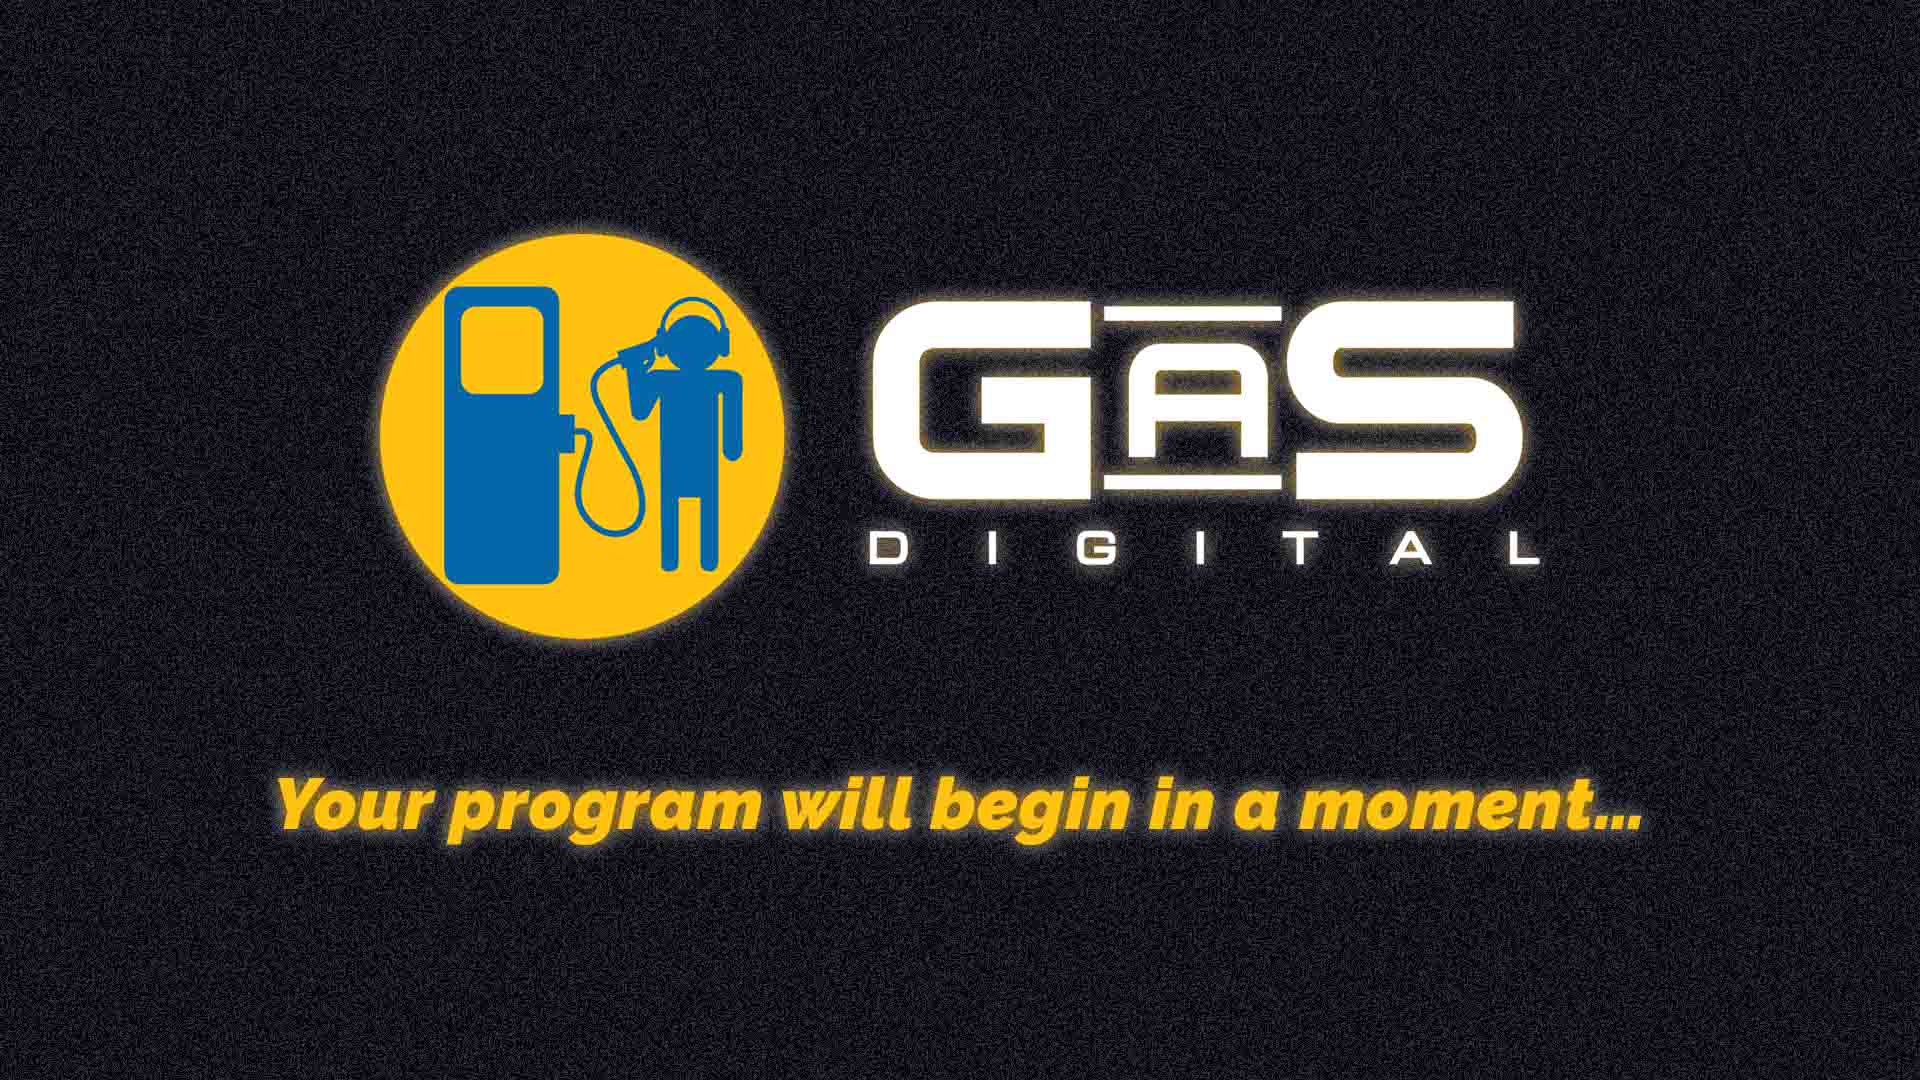 GaS Digital Network Show Episodes